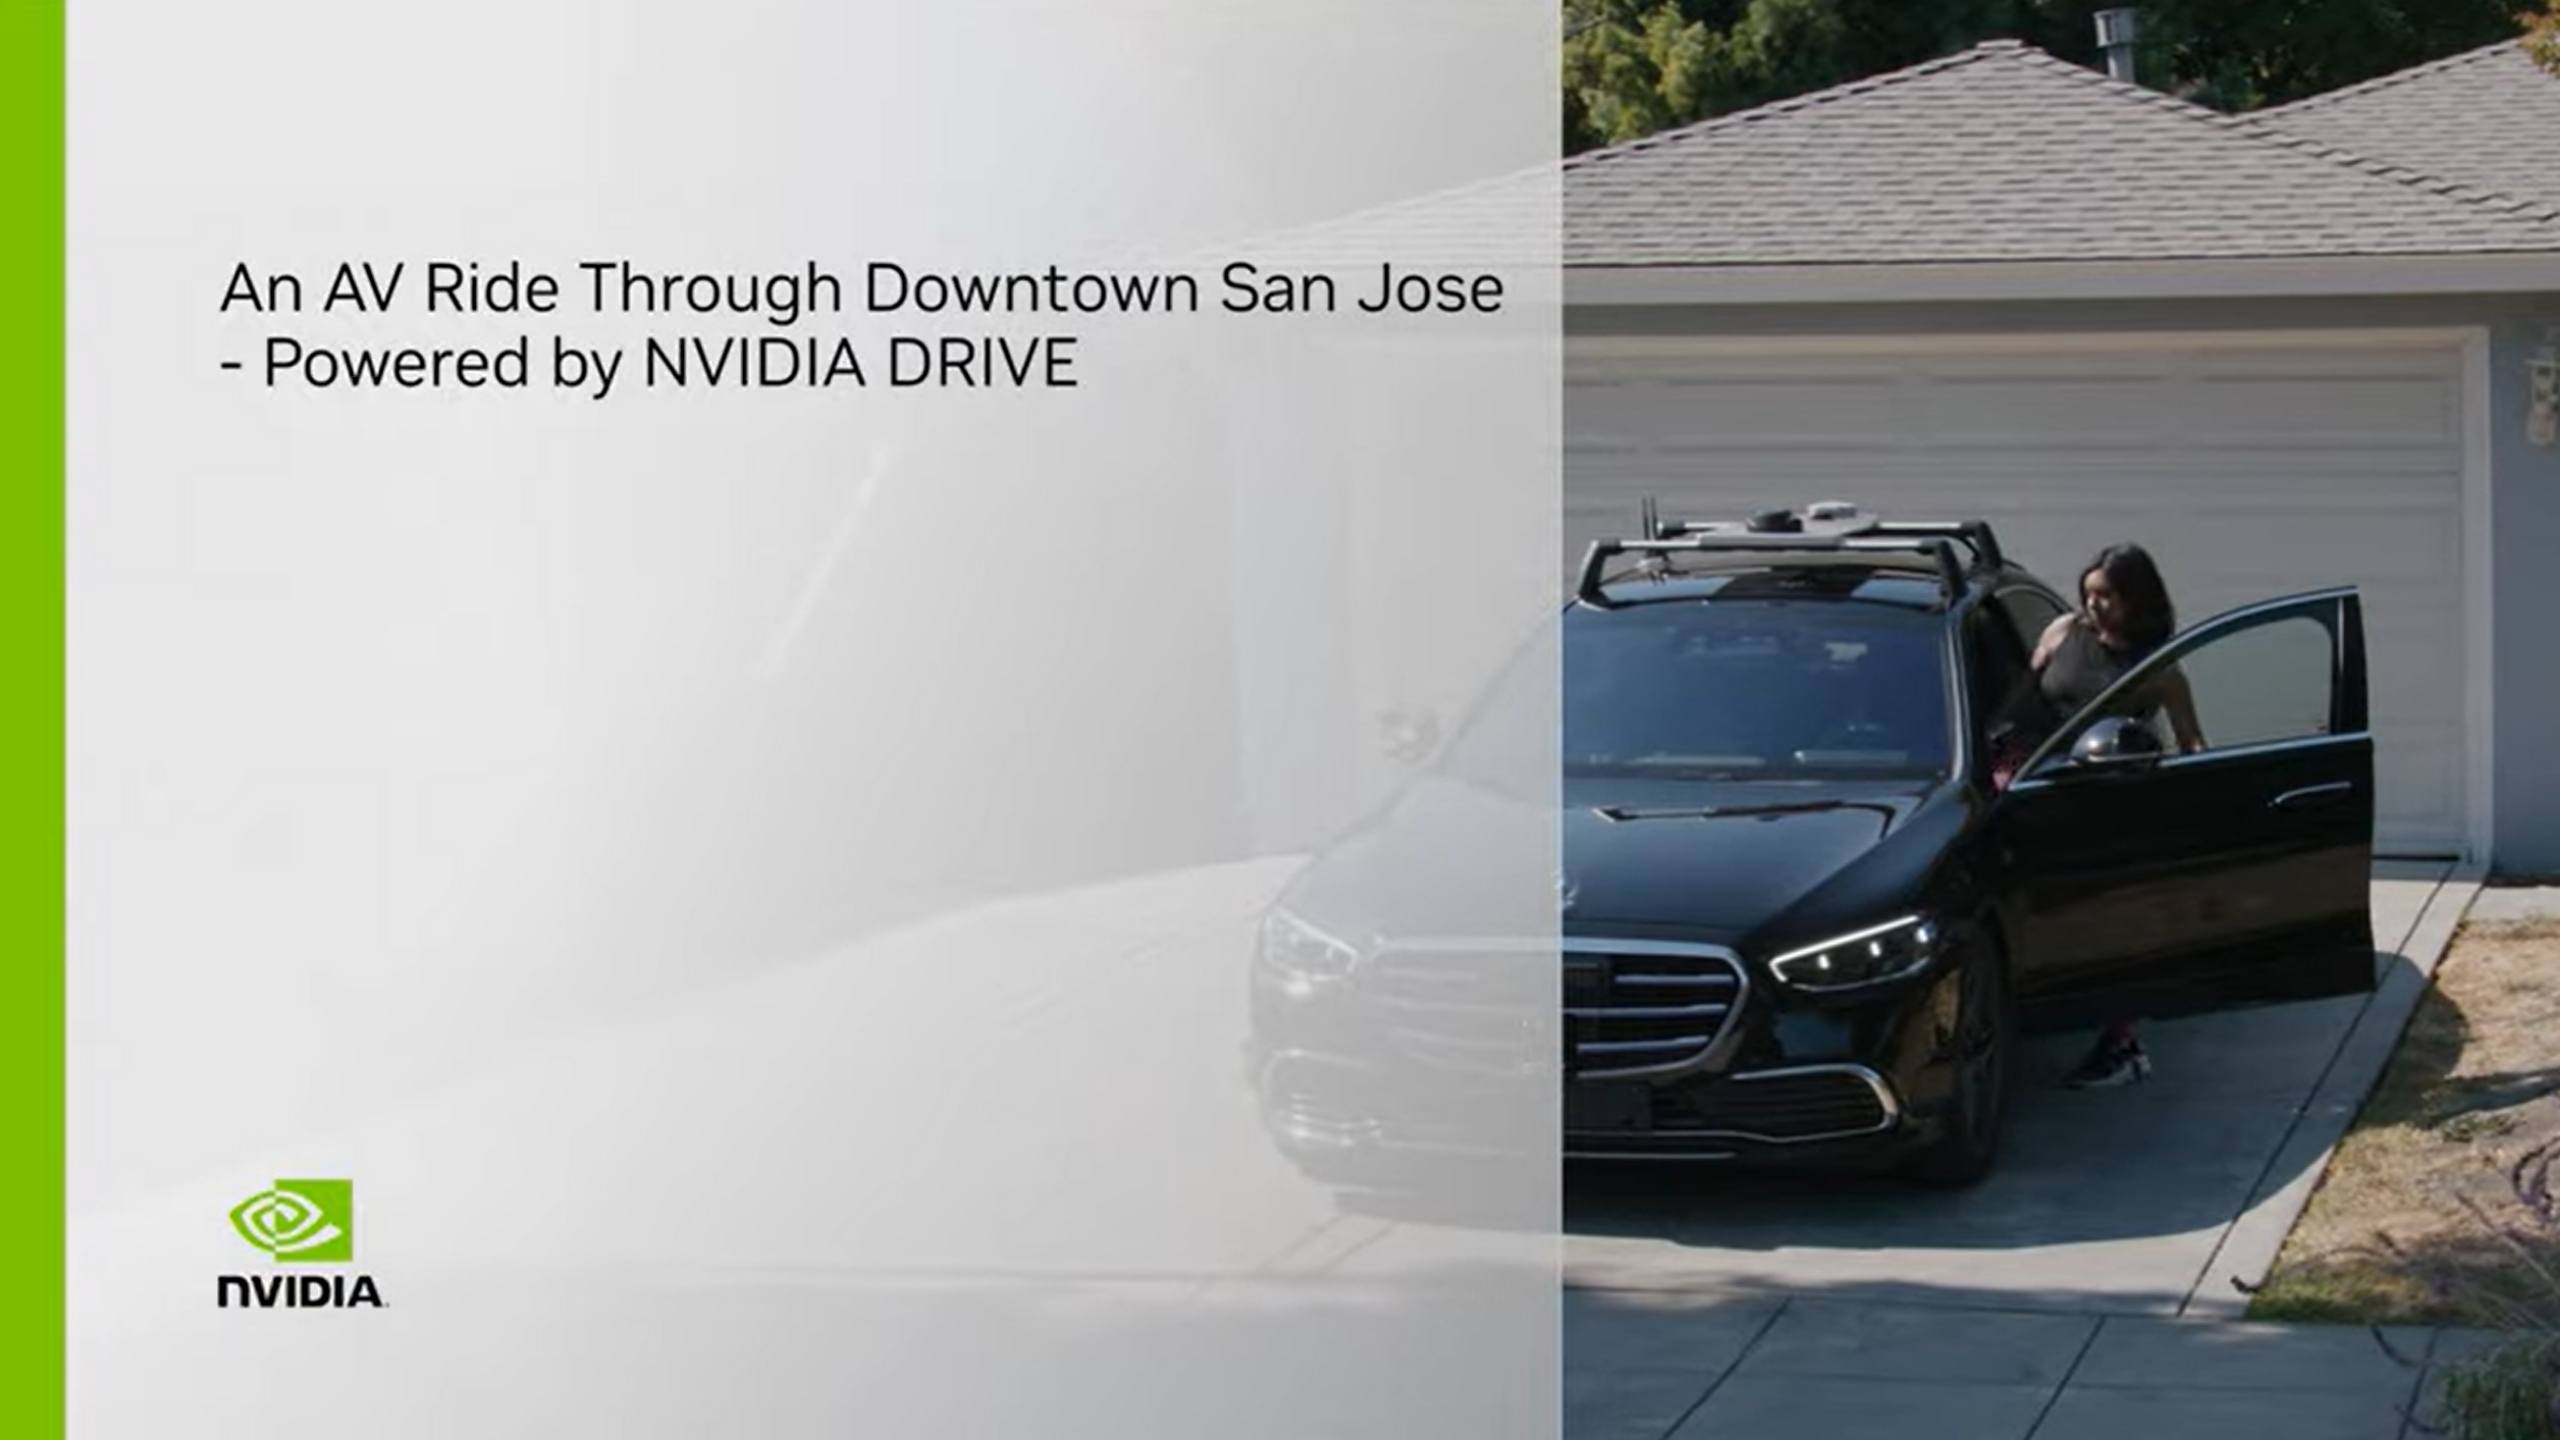 Tour nel centro di San Jose a bordo di un veicolo autonomo - Con NVIDIA DRIVE